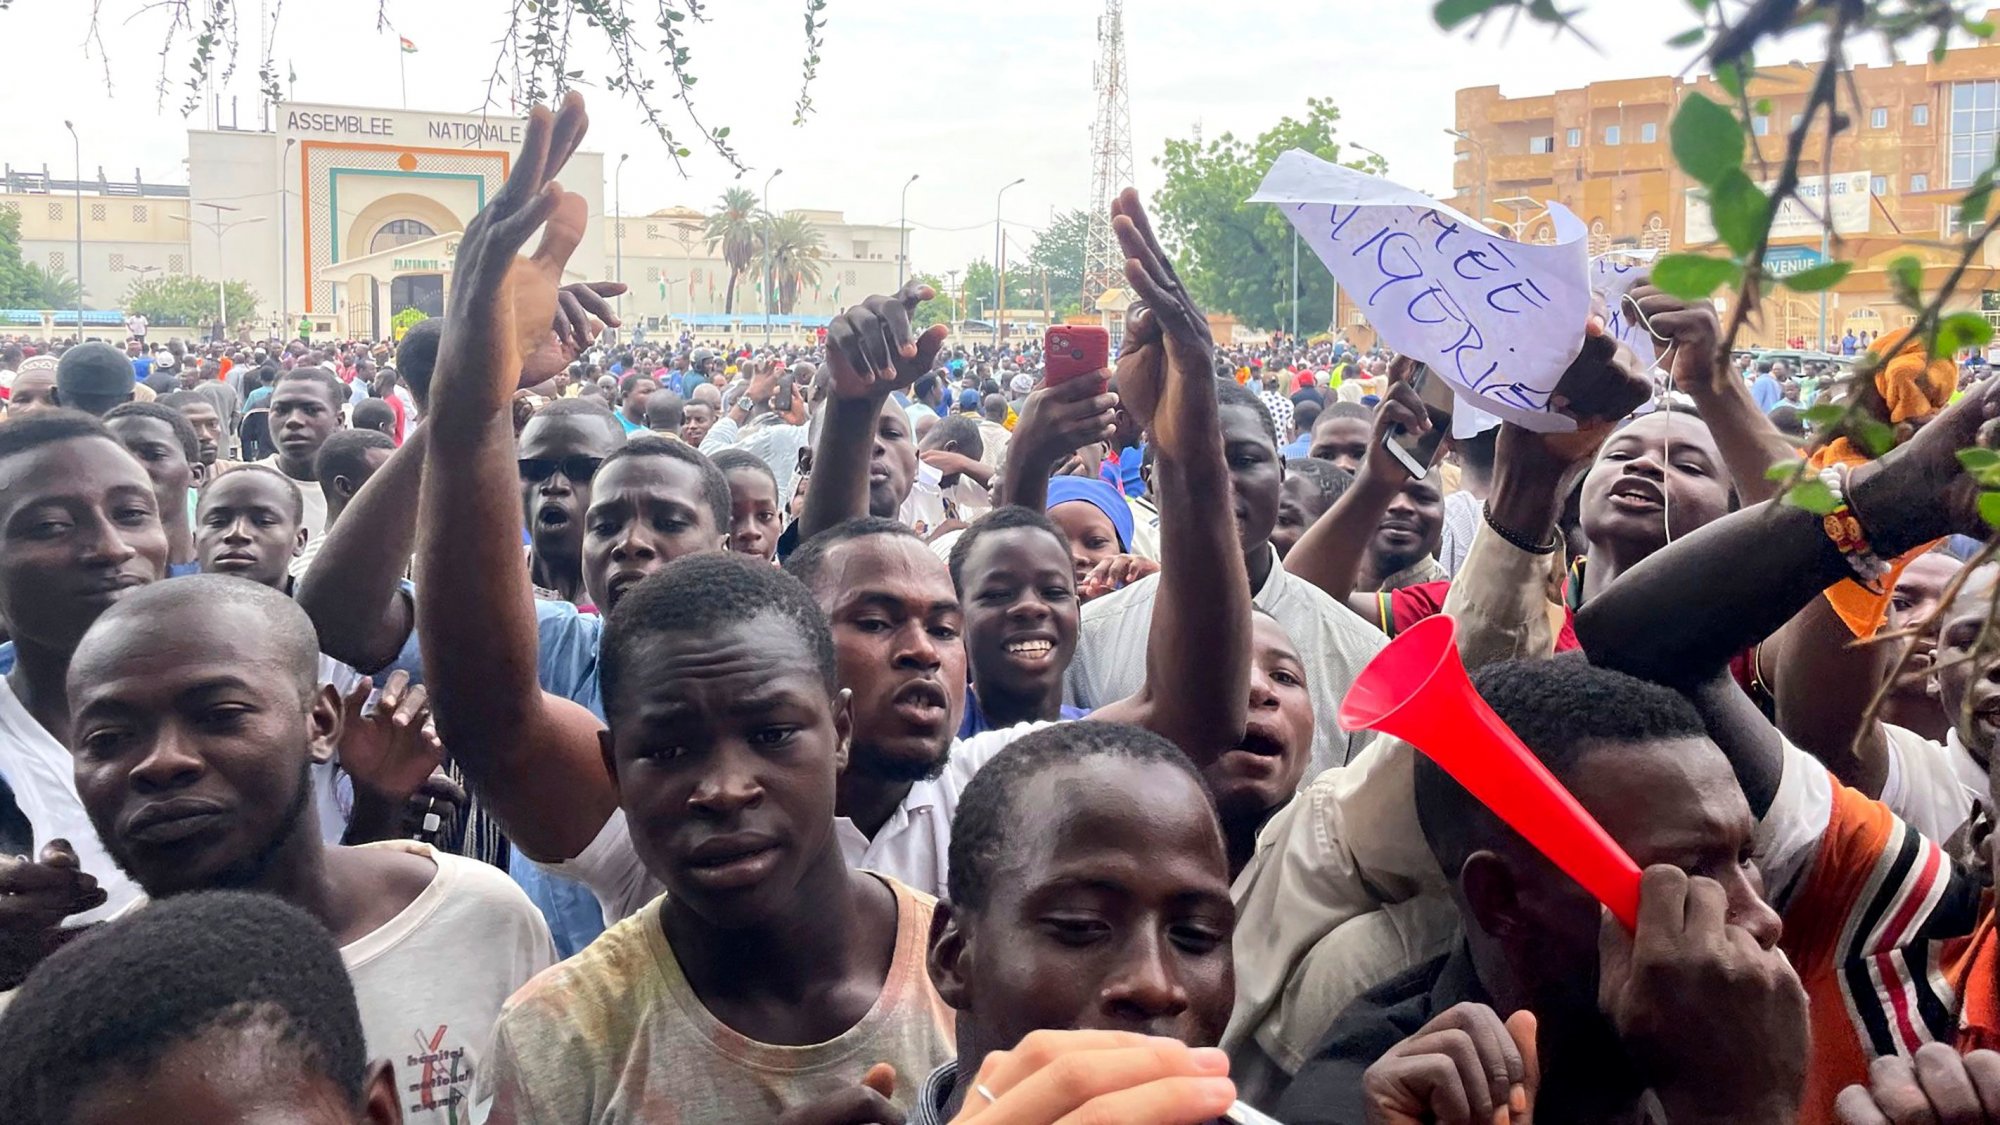 Νιγηρία: Υπερδιπλασιάζει τον κατώτατο μισθό ενώ γίνονται εκκλήσεις να κατεβεί ο κόσμος στους δρόμους